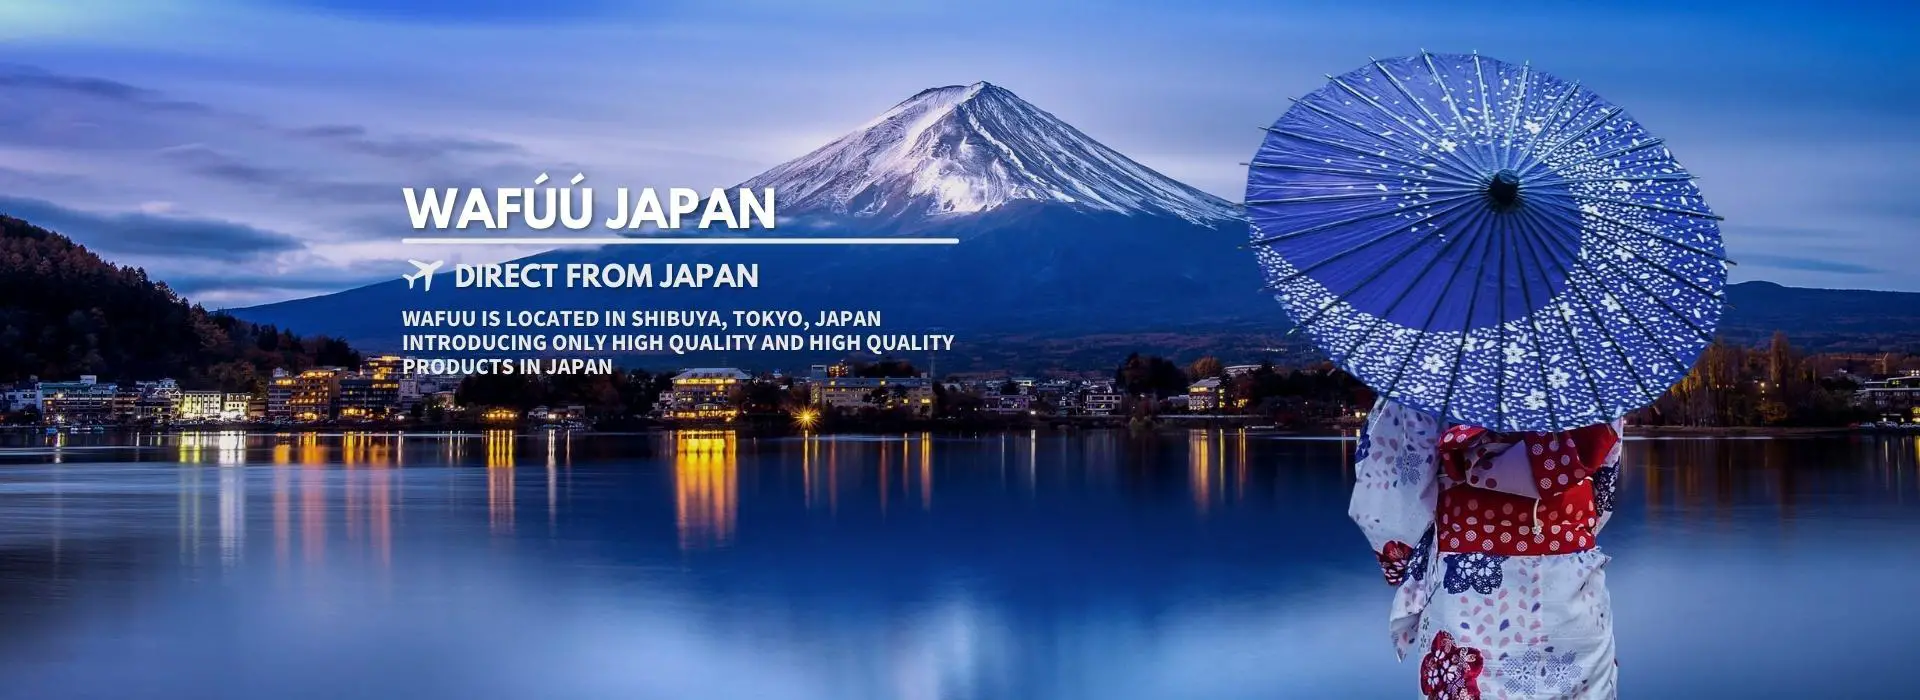 WAFUU.COM du Japon : expansion mondiale en 20 langues, croissance de plus de 1 200 %